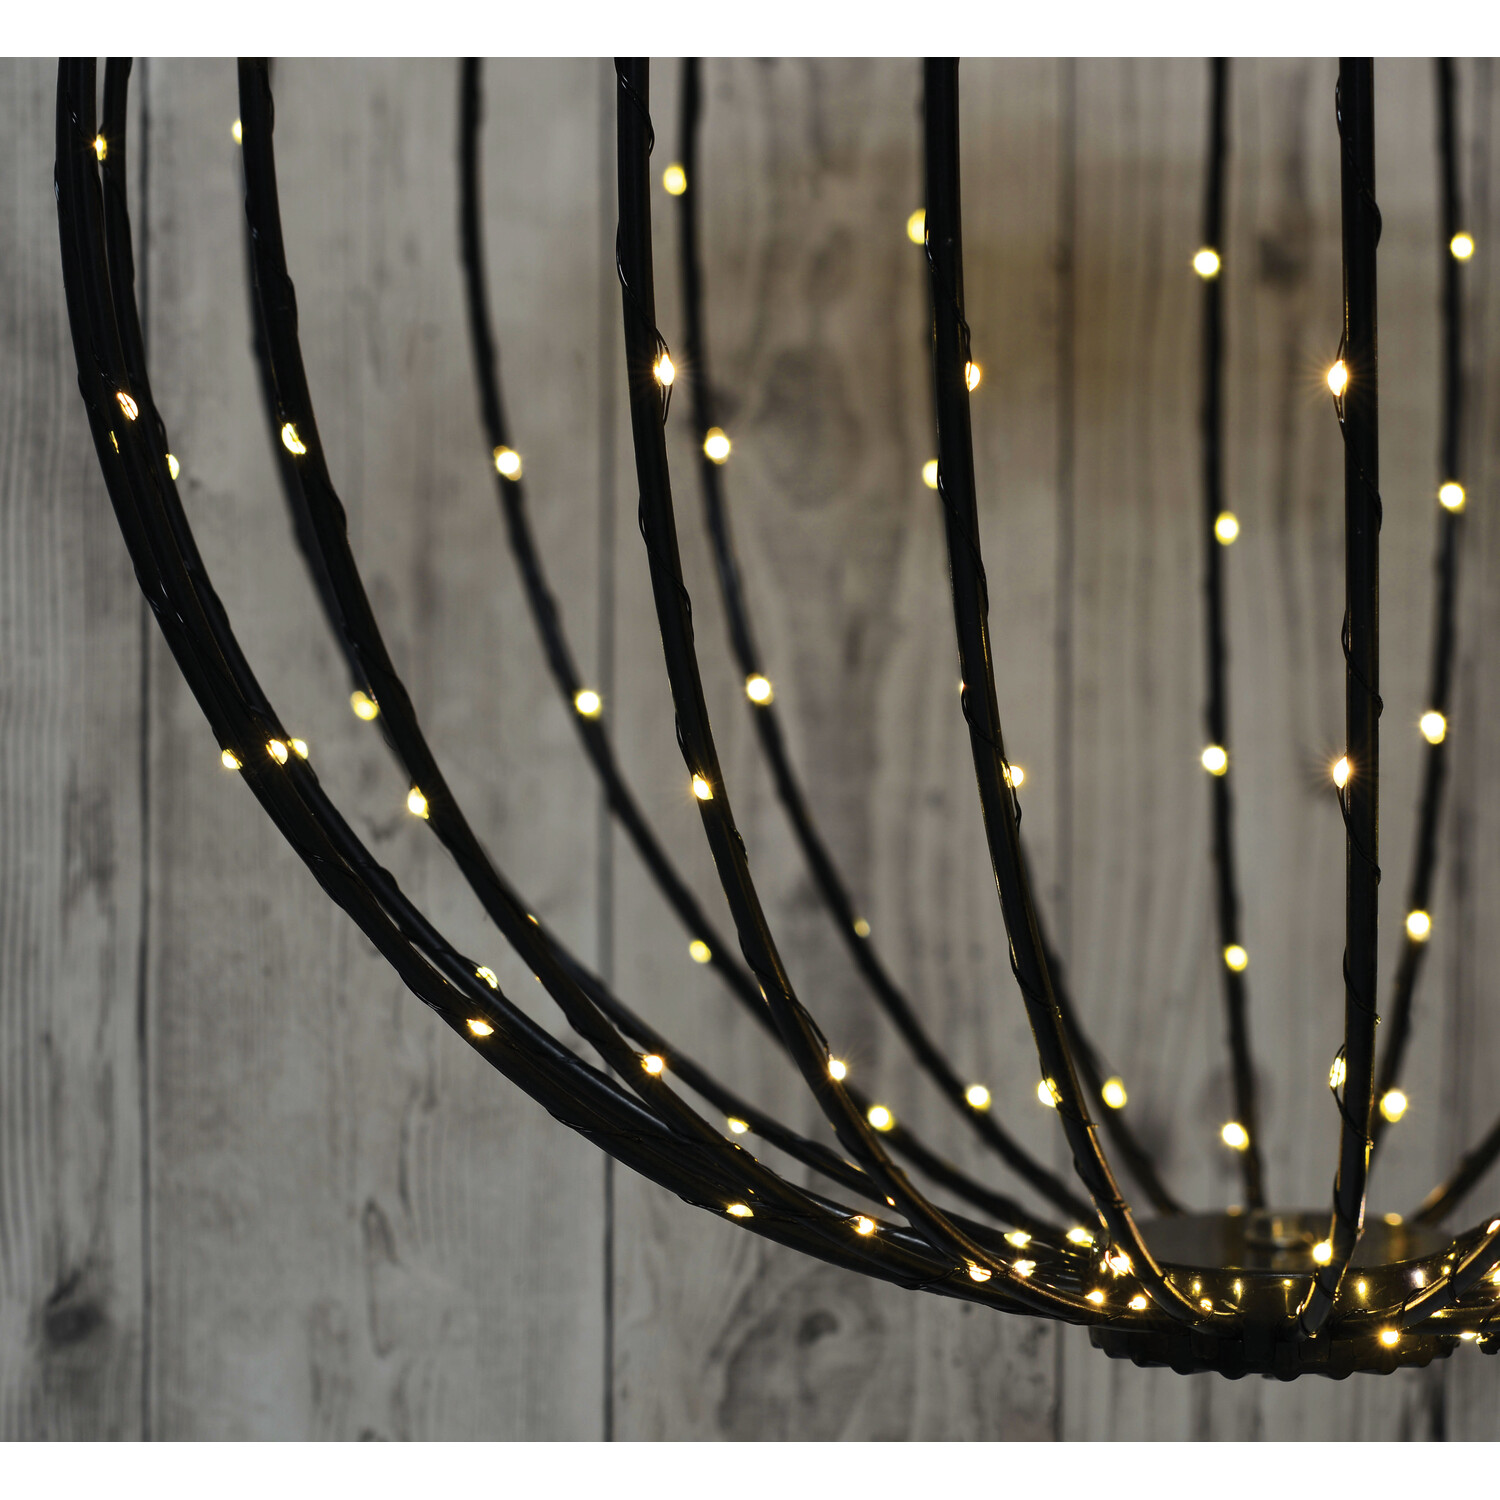 LED Christmas Light Ball - Black Image 3